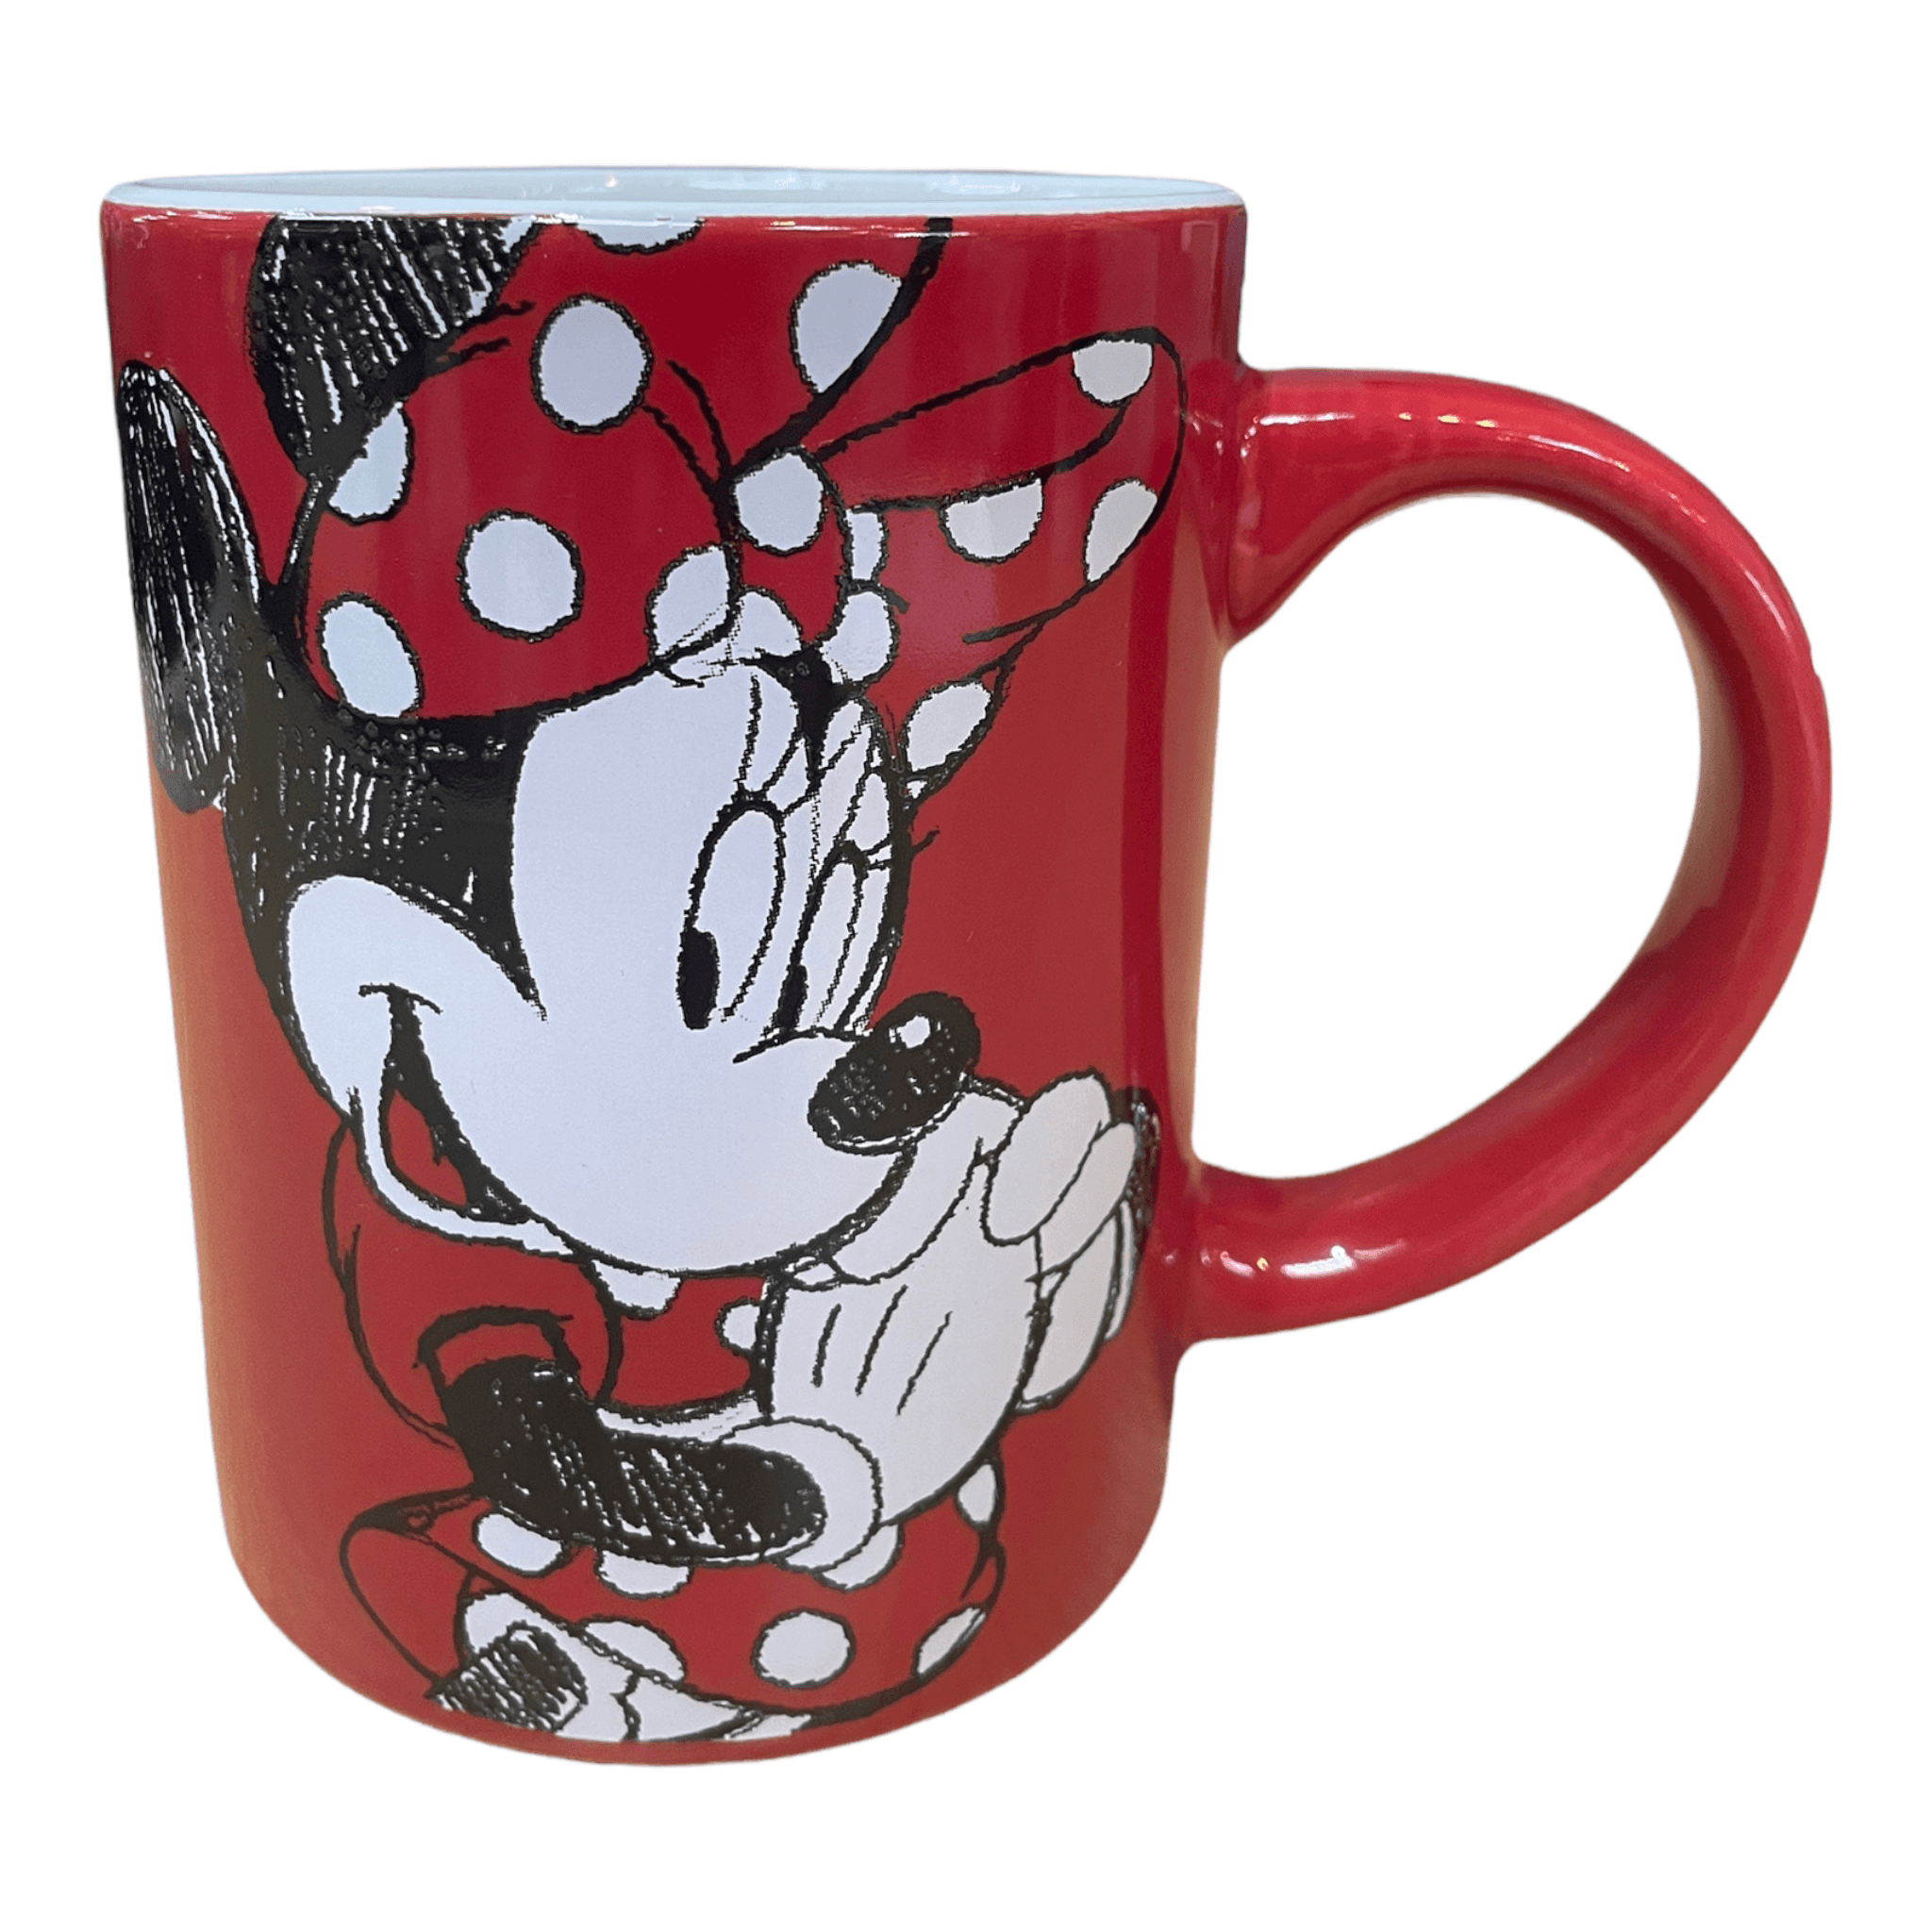 http://floridagifts.com/cdn/shop/files/disney-minnie-mouse-cute-red-11oz-ceramic-mug-1-33074073501880.png?v=1692810413